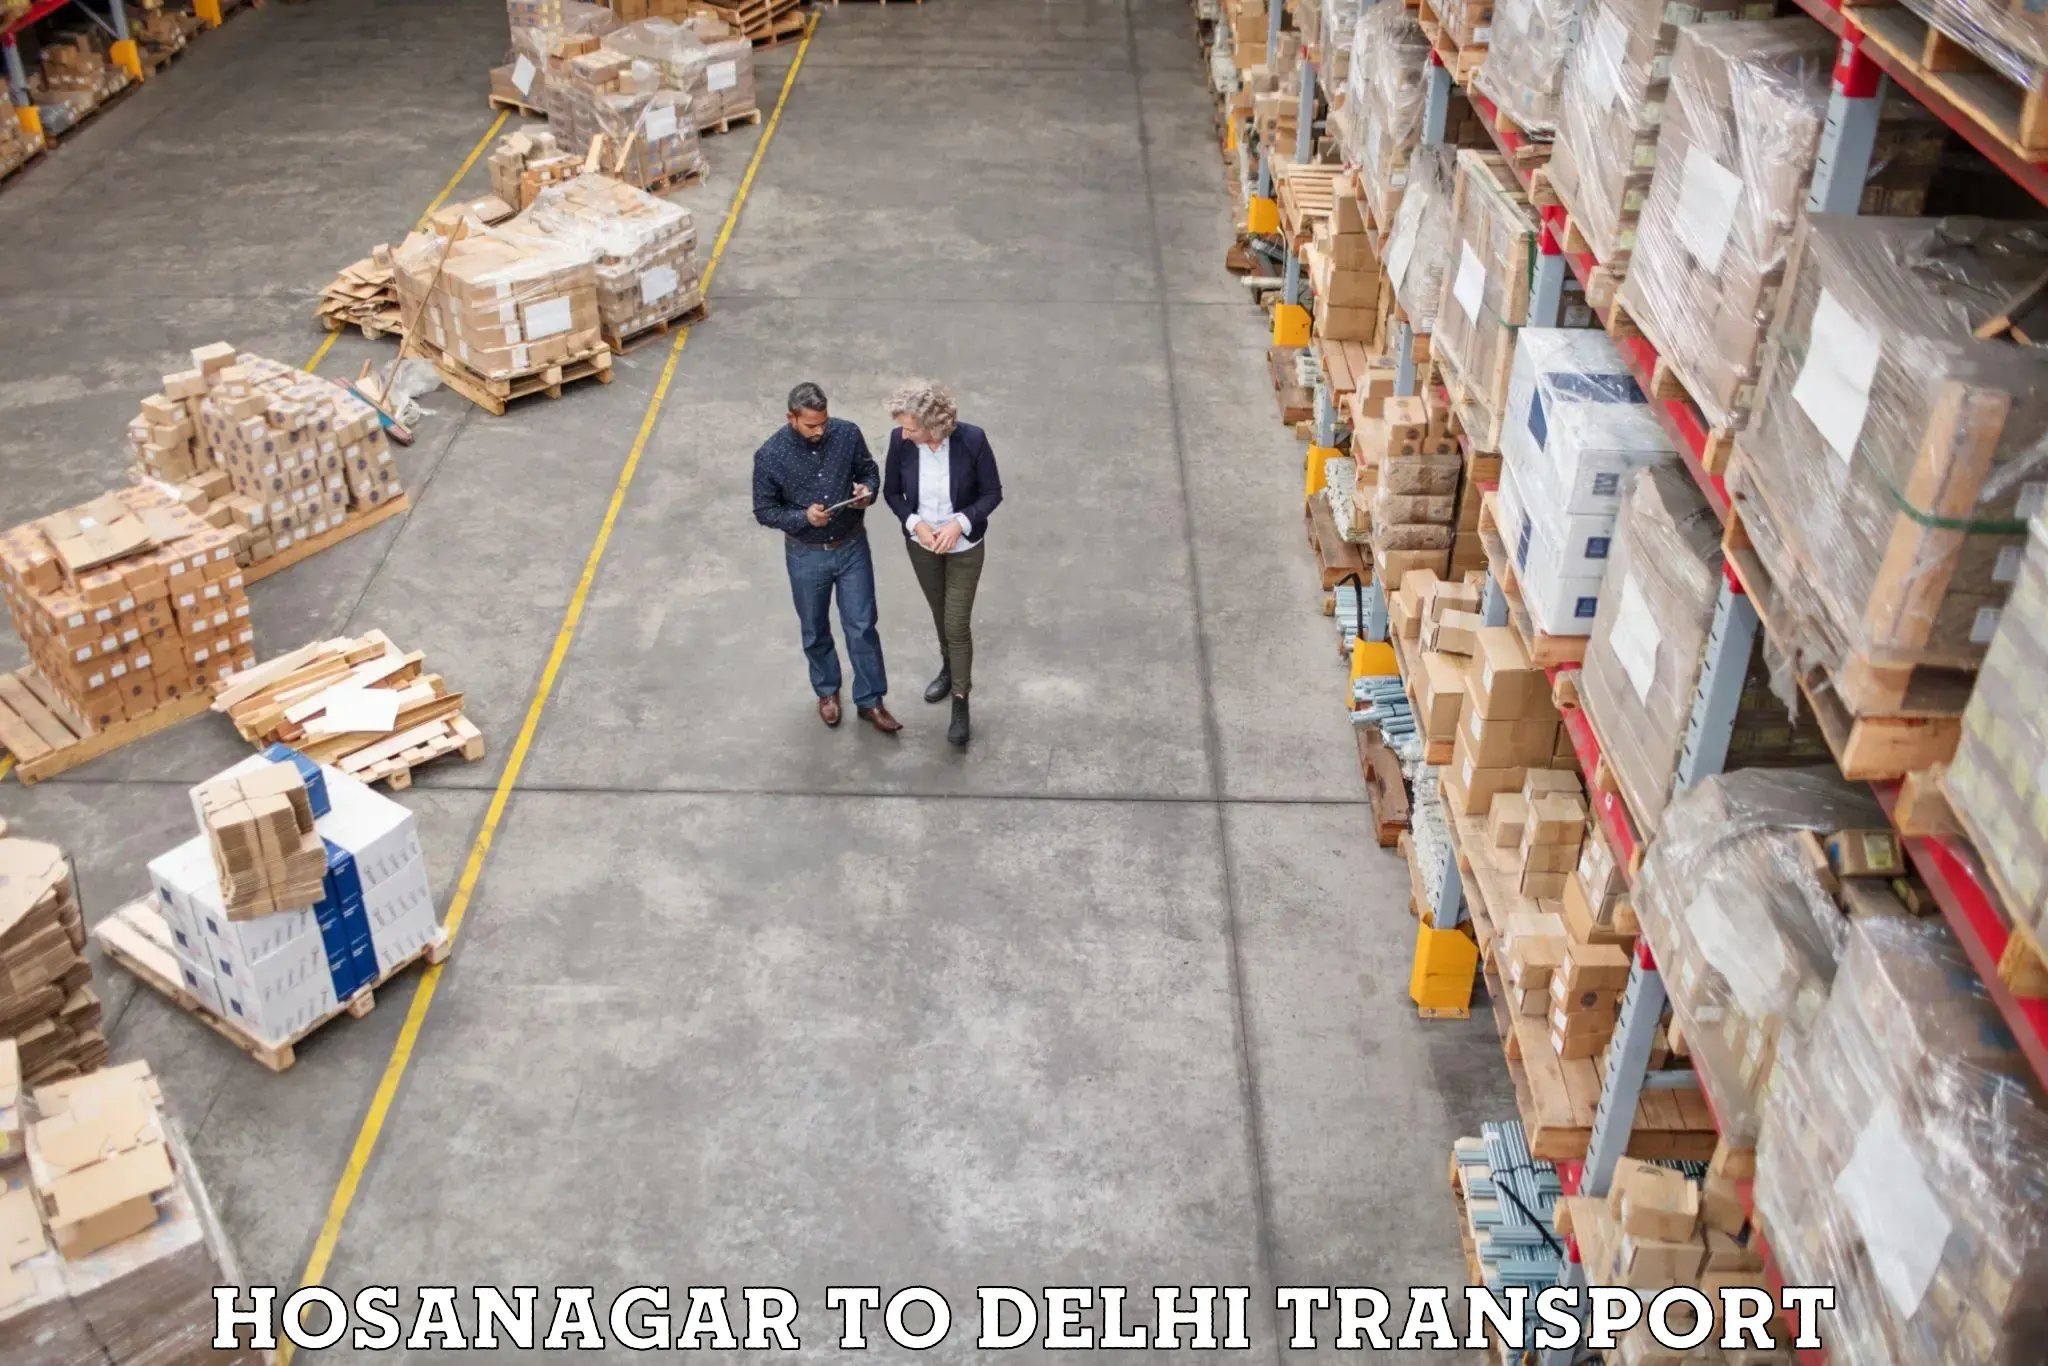 Express transport services Hosanagar to Jamia Hamdard New Delhi